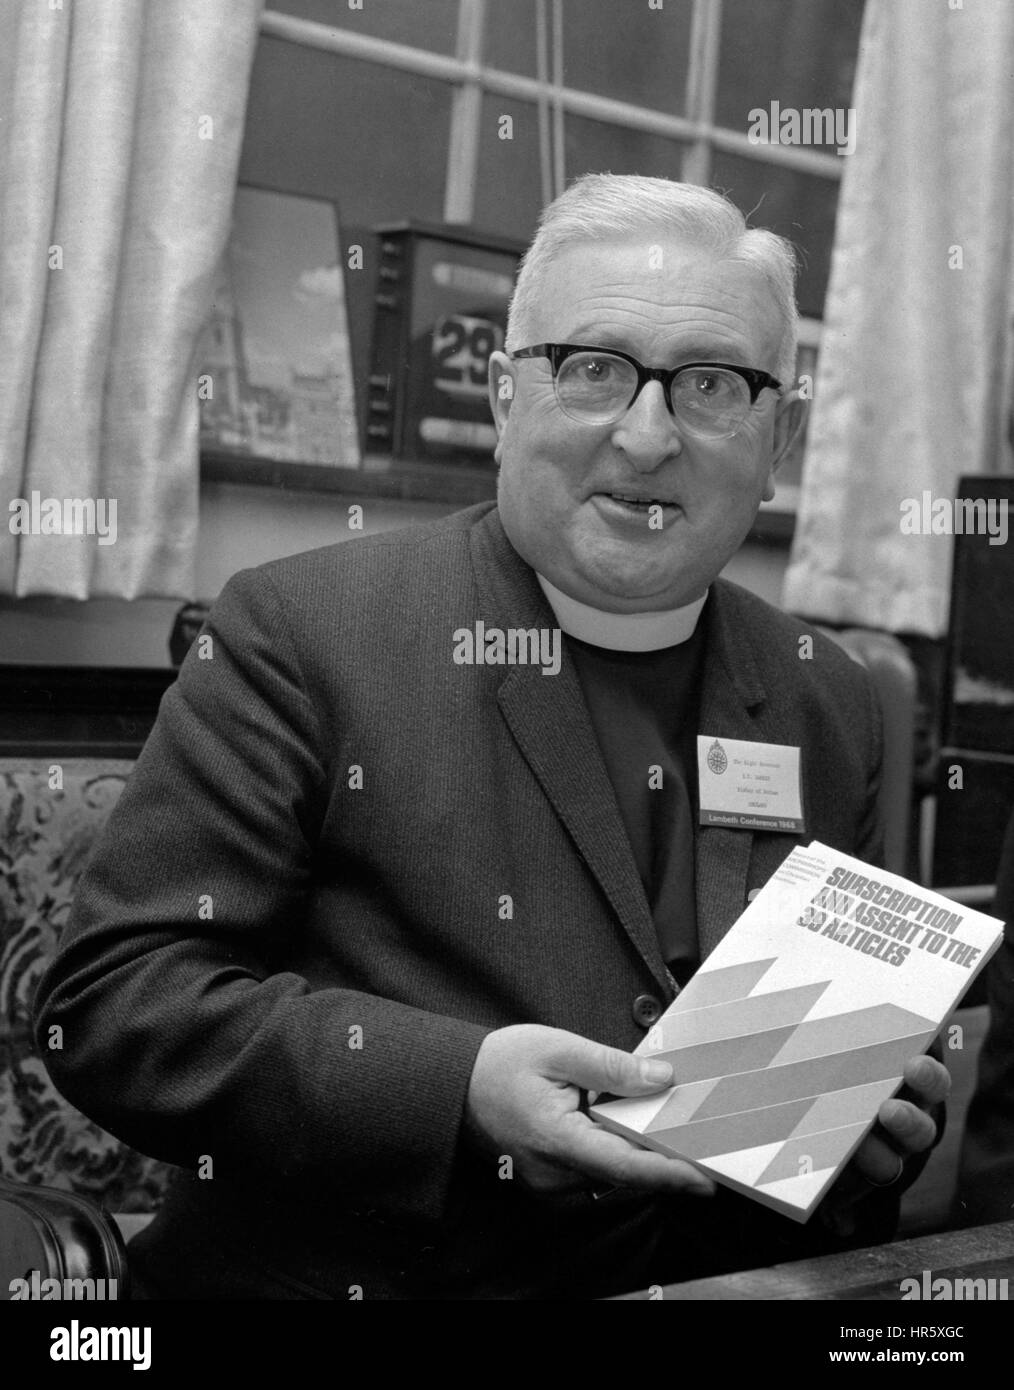 Das rechte Reverend Dr. Ian Ramsey, Bischof von Durham und Vorstandsvorsitzender der erzbischöflichen Kommission auf Christian Doctrine, enthält eine Kopie des ersten Berichts der Kommission - Abonnement und Zustimmung zu den 39 Artikeln - in London. Stockfoto